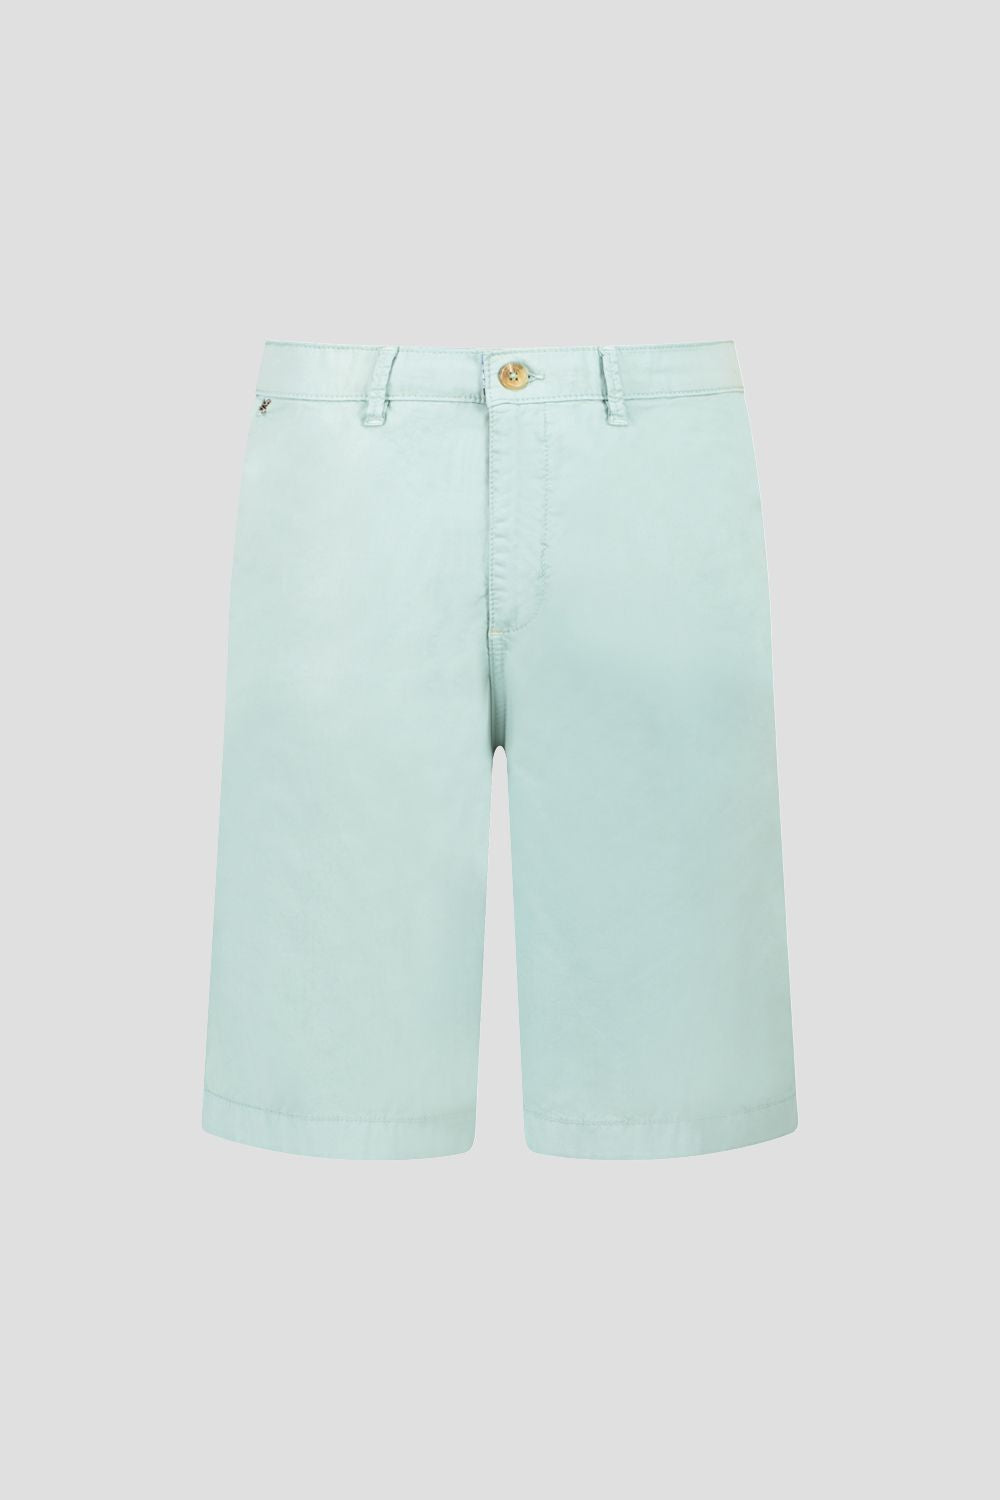 Gardeur - Modern Fit, Shorts Light Blue